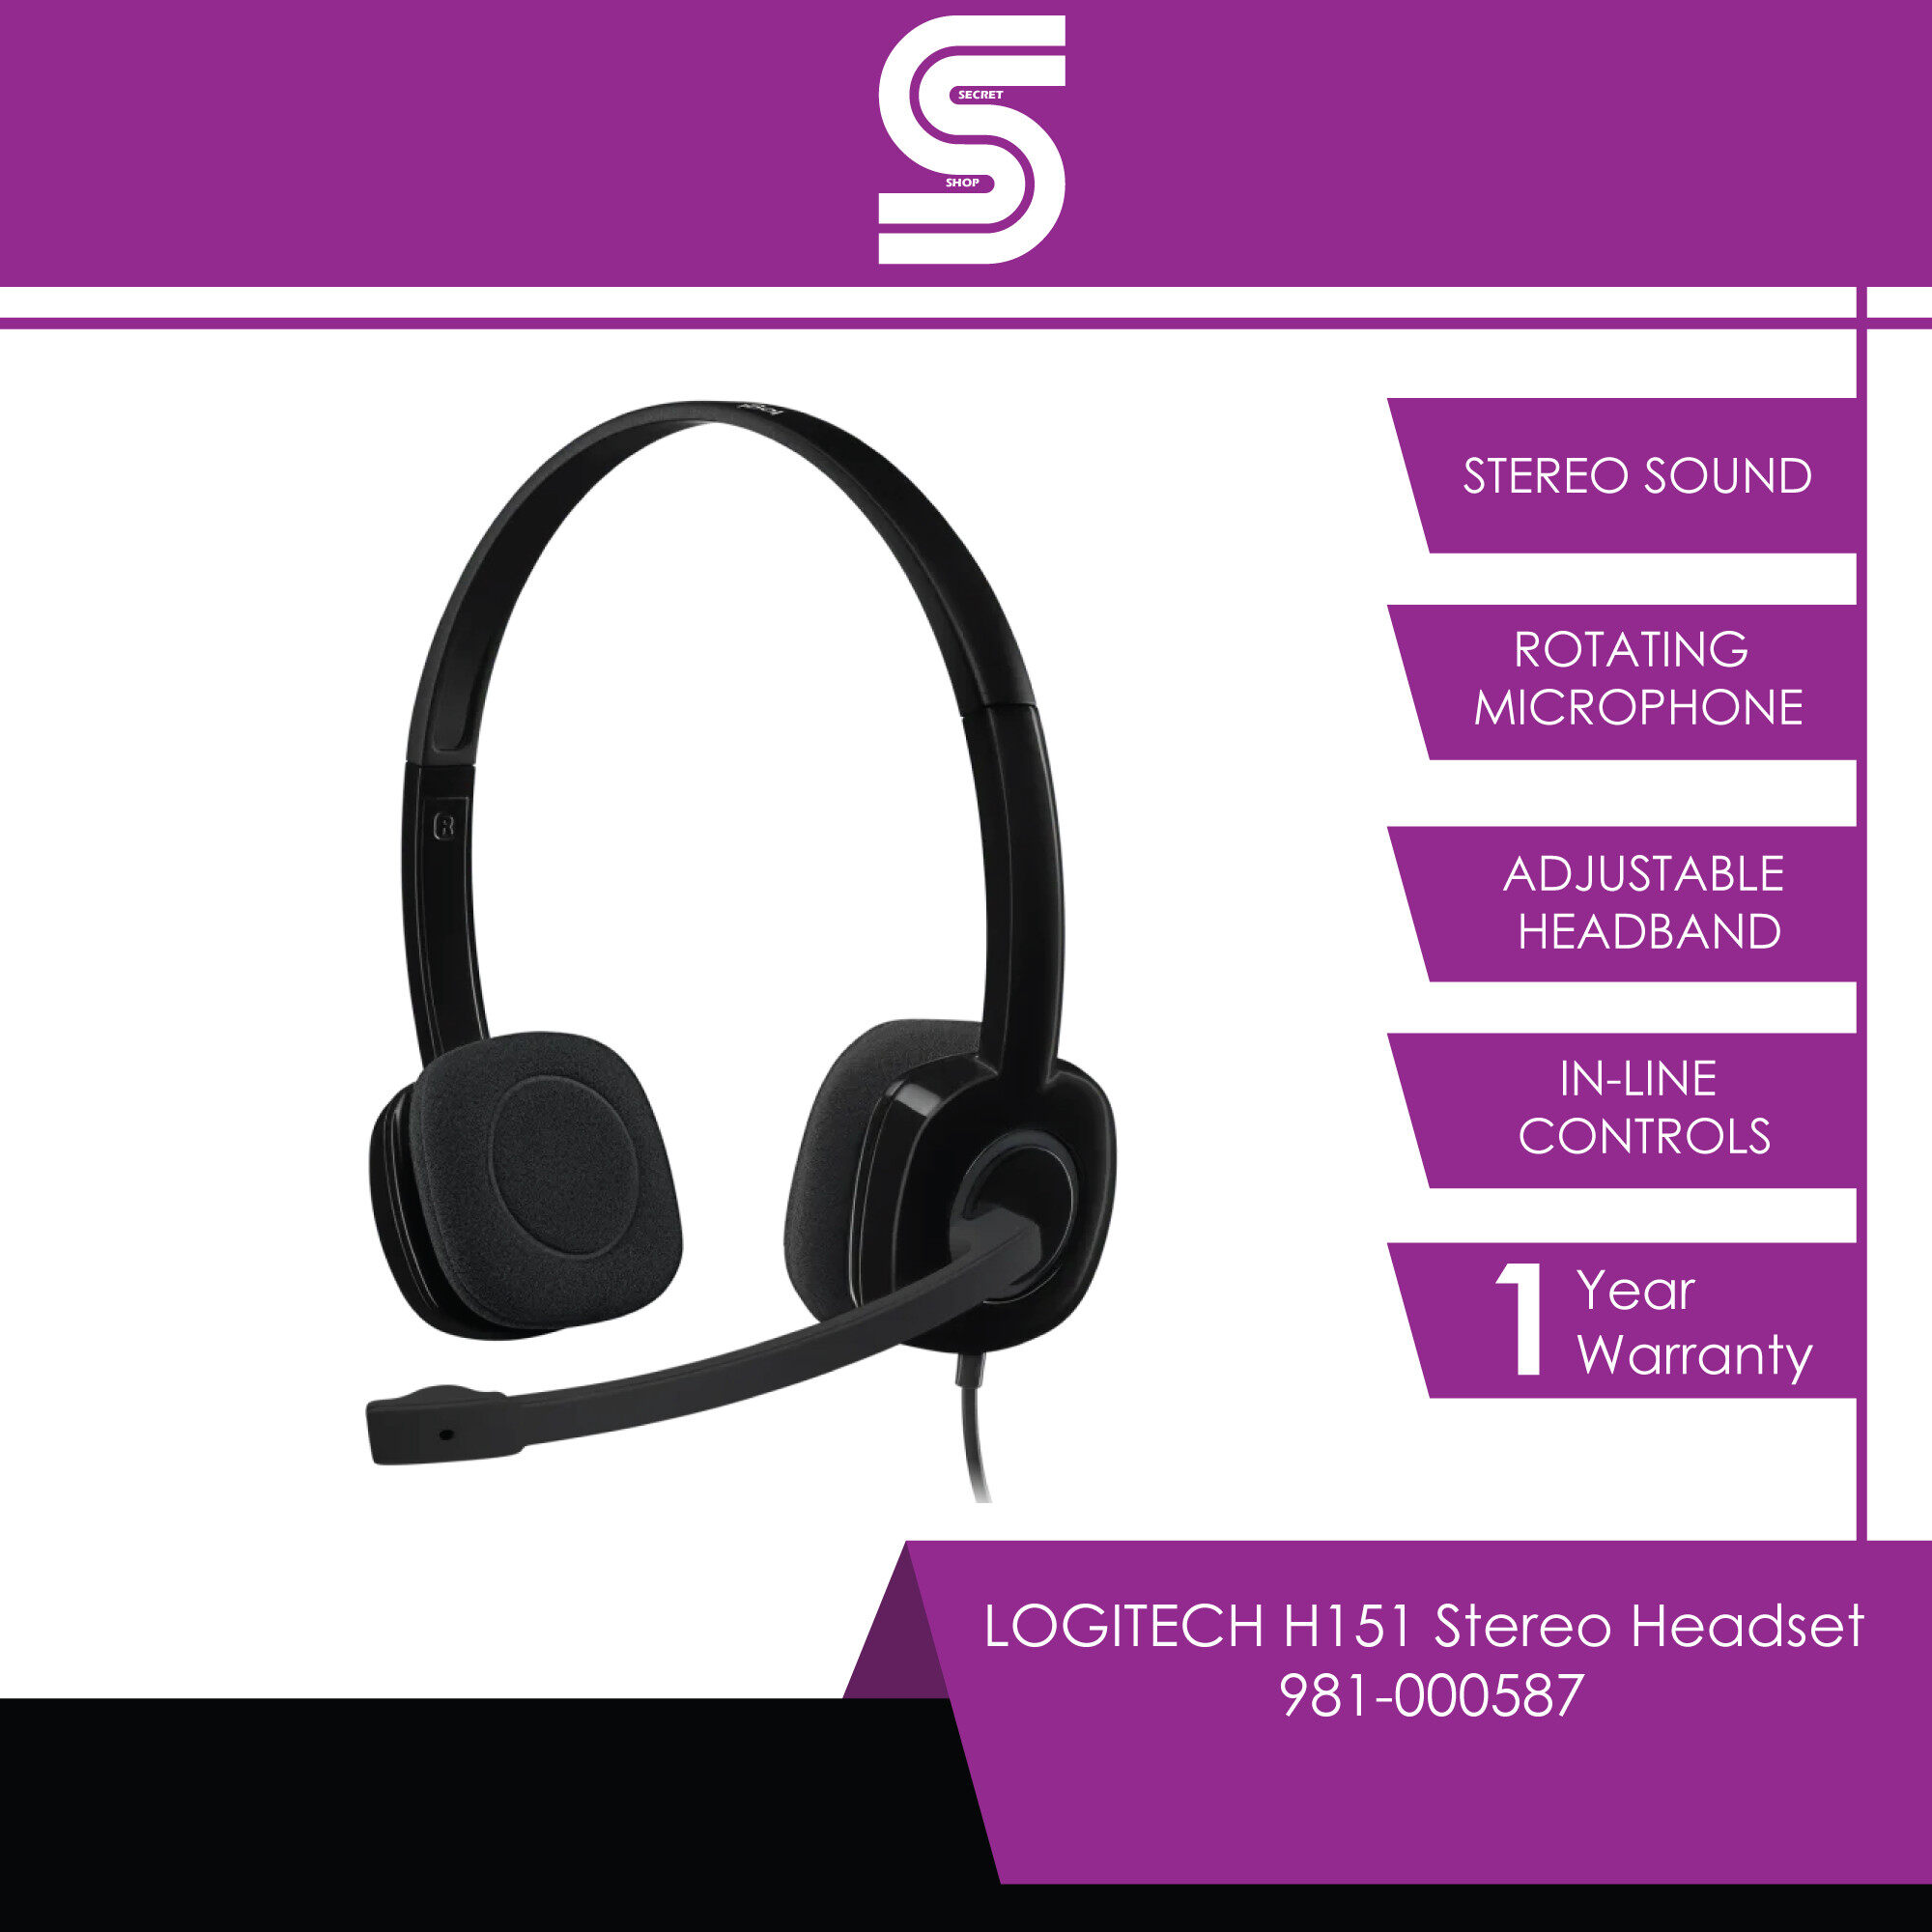 LOGITECH H151 Stereo Headset - 981-000587